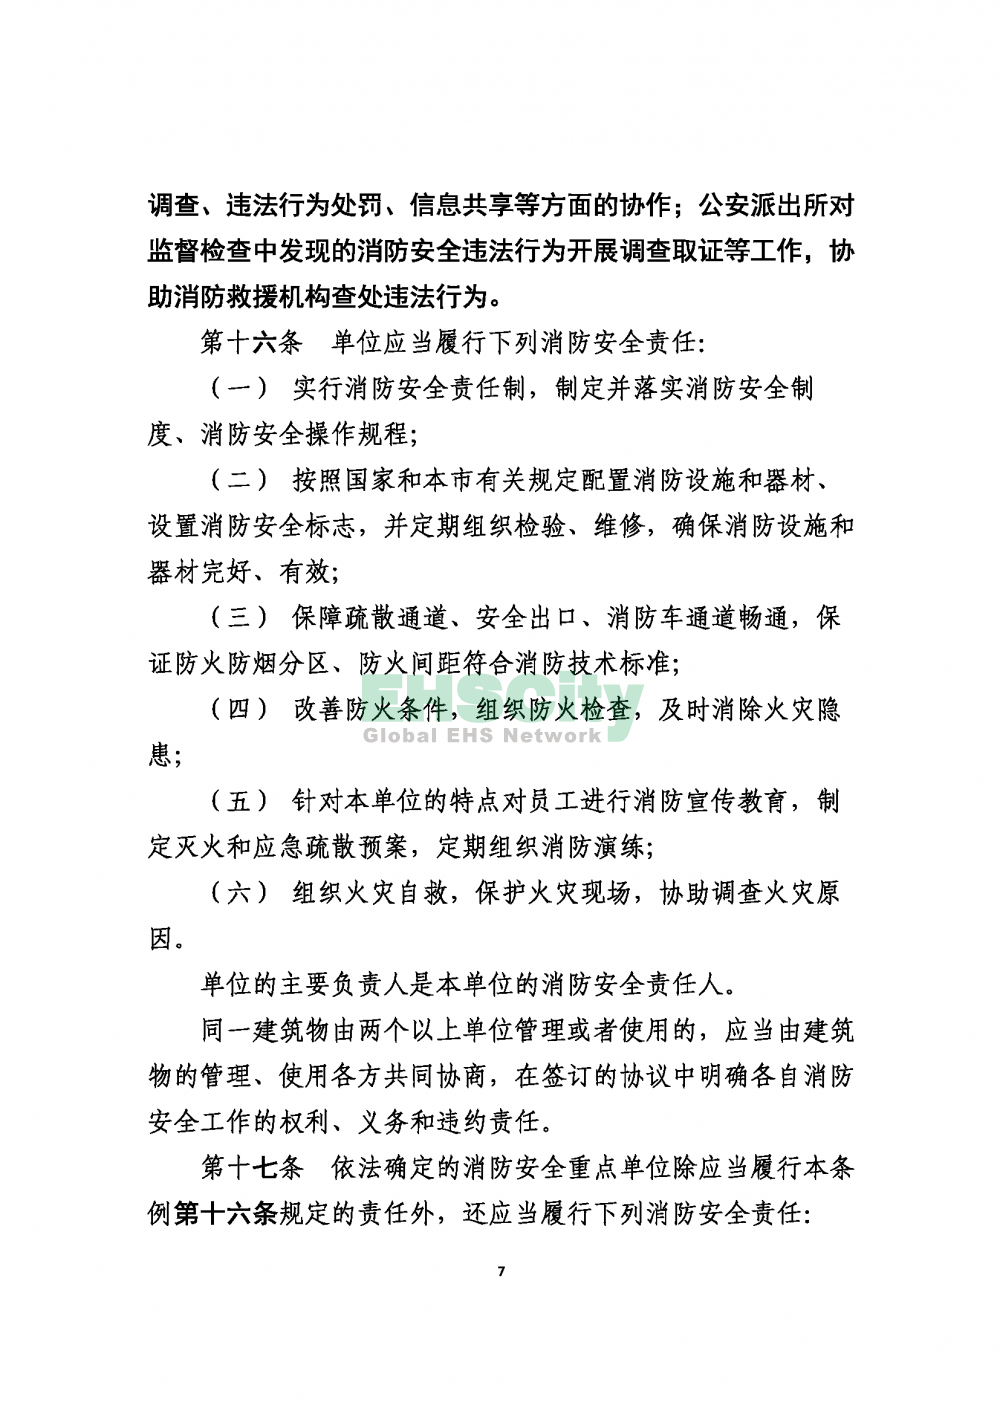 2020版上海消防条例_页面_07